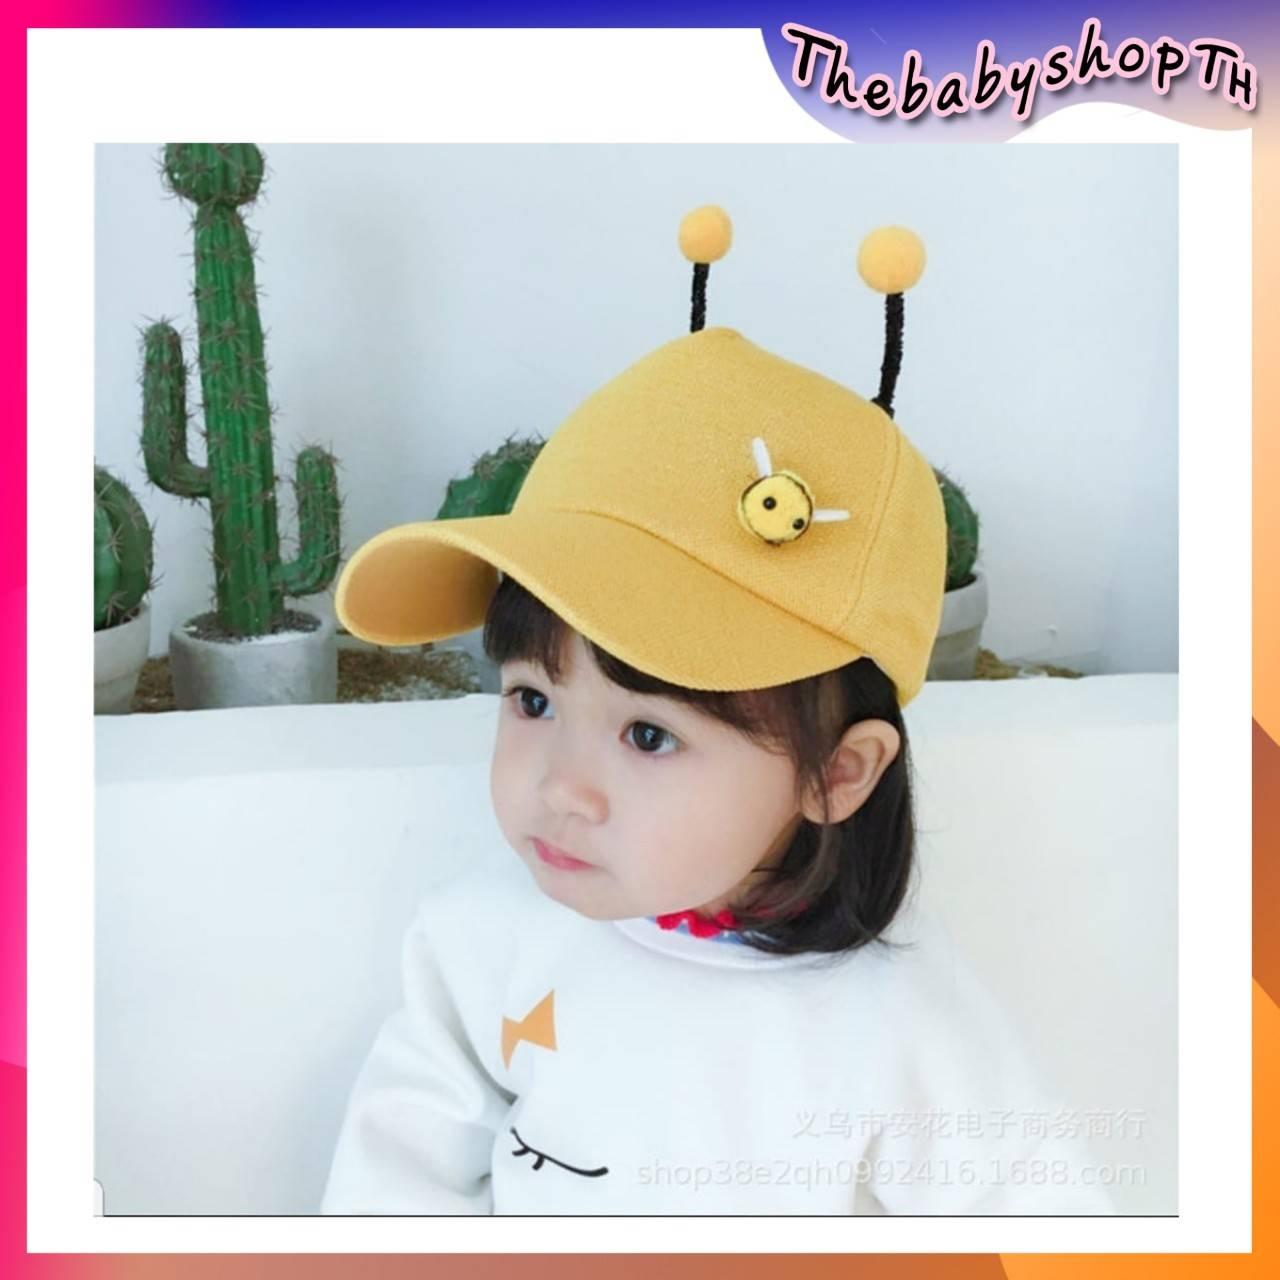 Thebabyshopth02 หมวกผึ้งน้อย หมวกเด็ก หมวกแก๊ปเด็ก มีหนวดด้านบนคล้ายหนวดผึ้ง น่ารักมาก